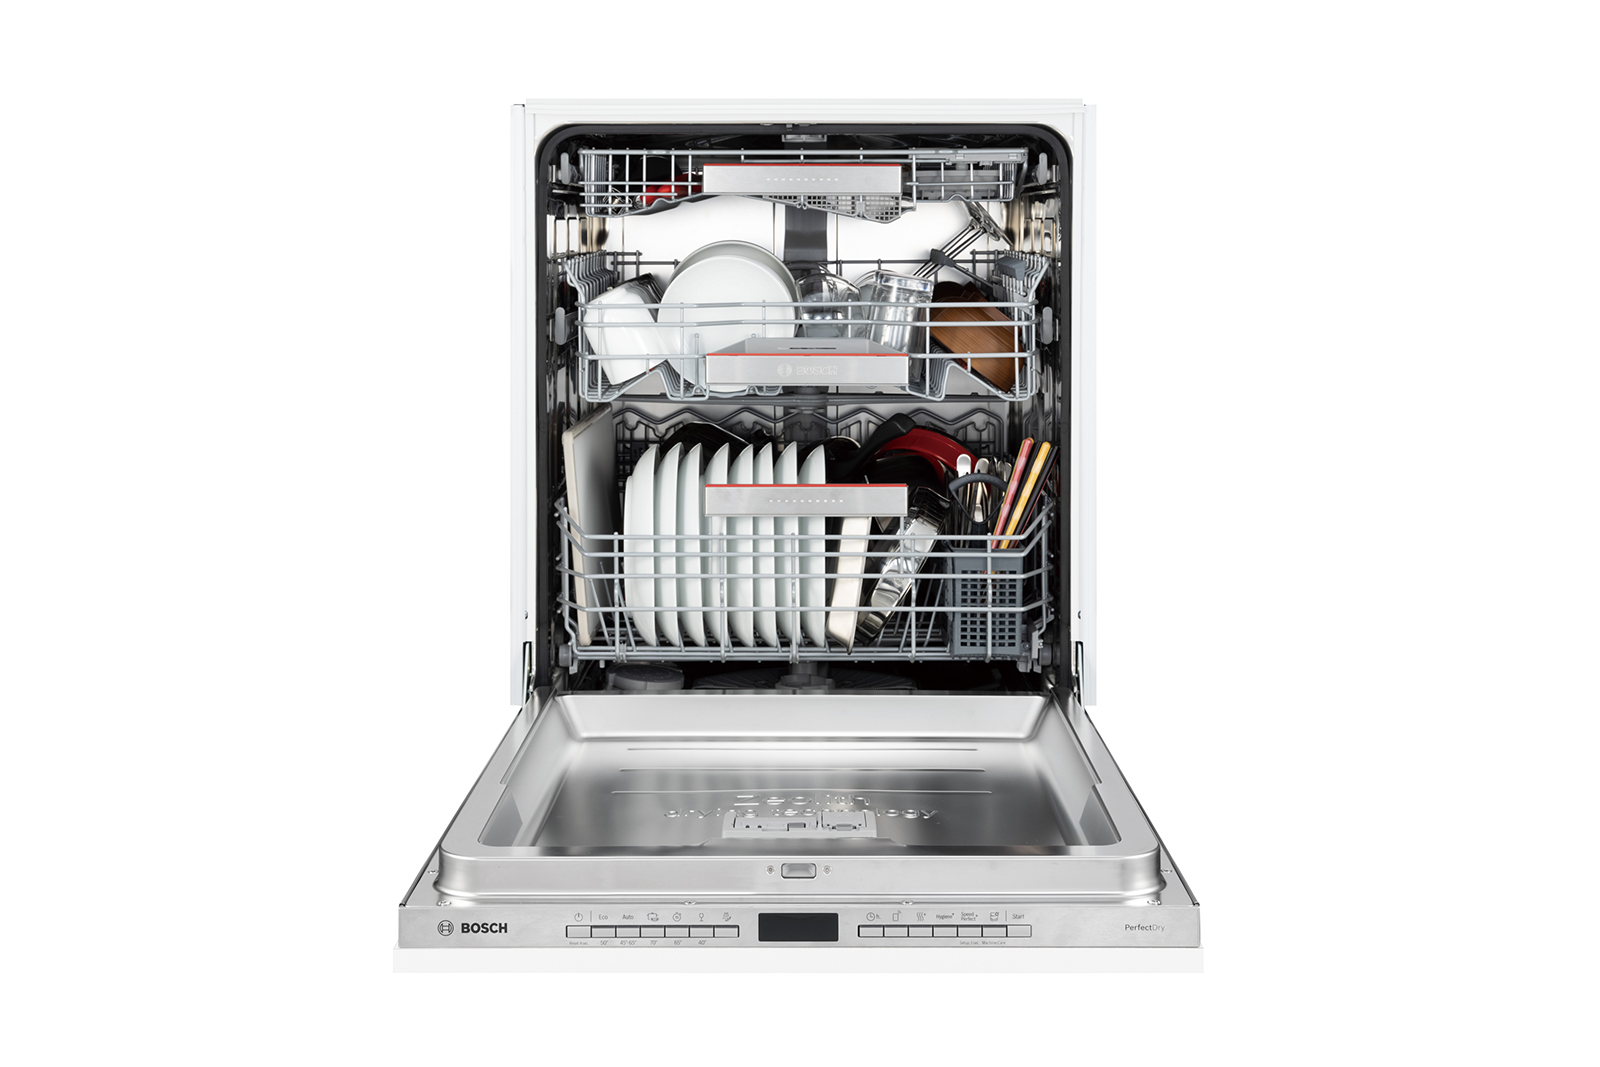 ビルトイン食洗機 フロントオープン W600 フルドアタイプ ゼオライトドライ（本体のみ） KB-PT004-04-G234 およそ12人分の基本的な食器を一気に洗浄できる容量です。3~4人暮らしで1日分の食器量がまとめて洗える容量とお考えください